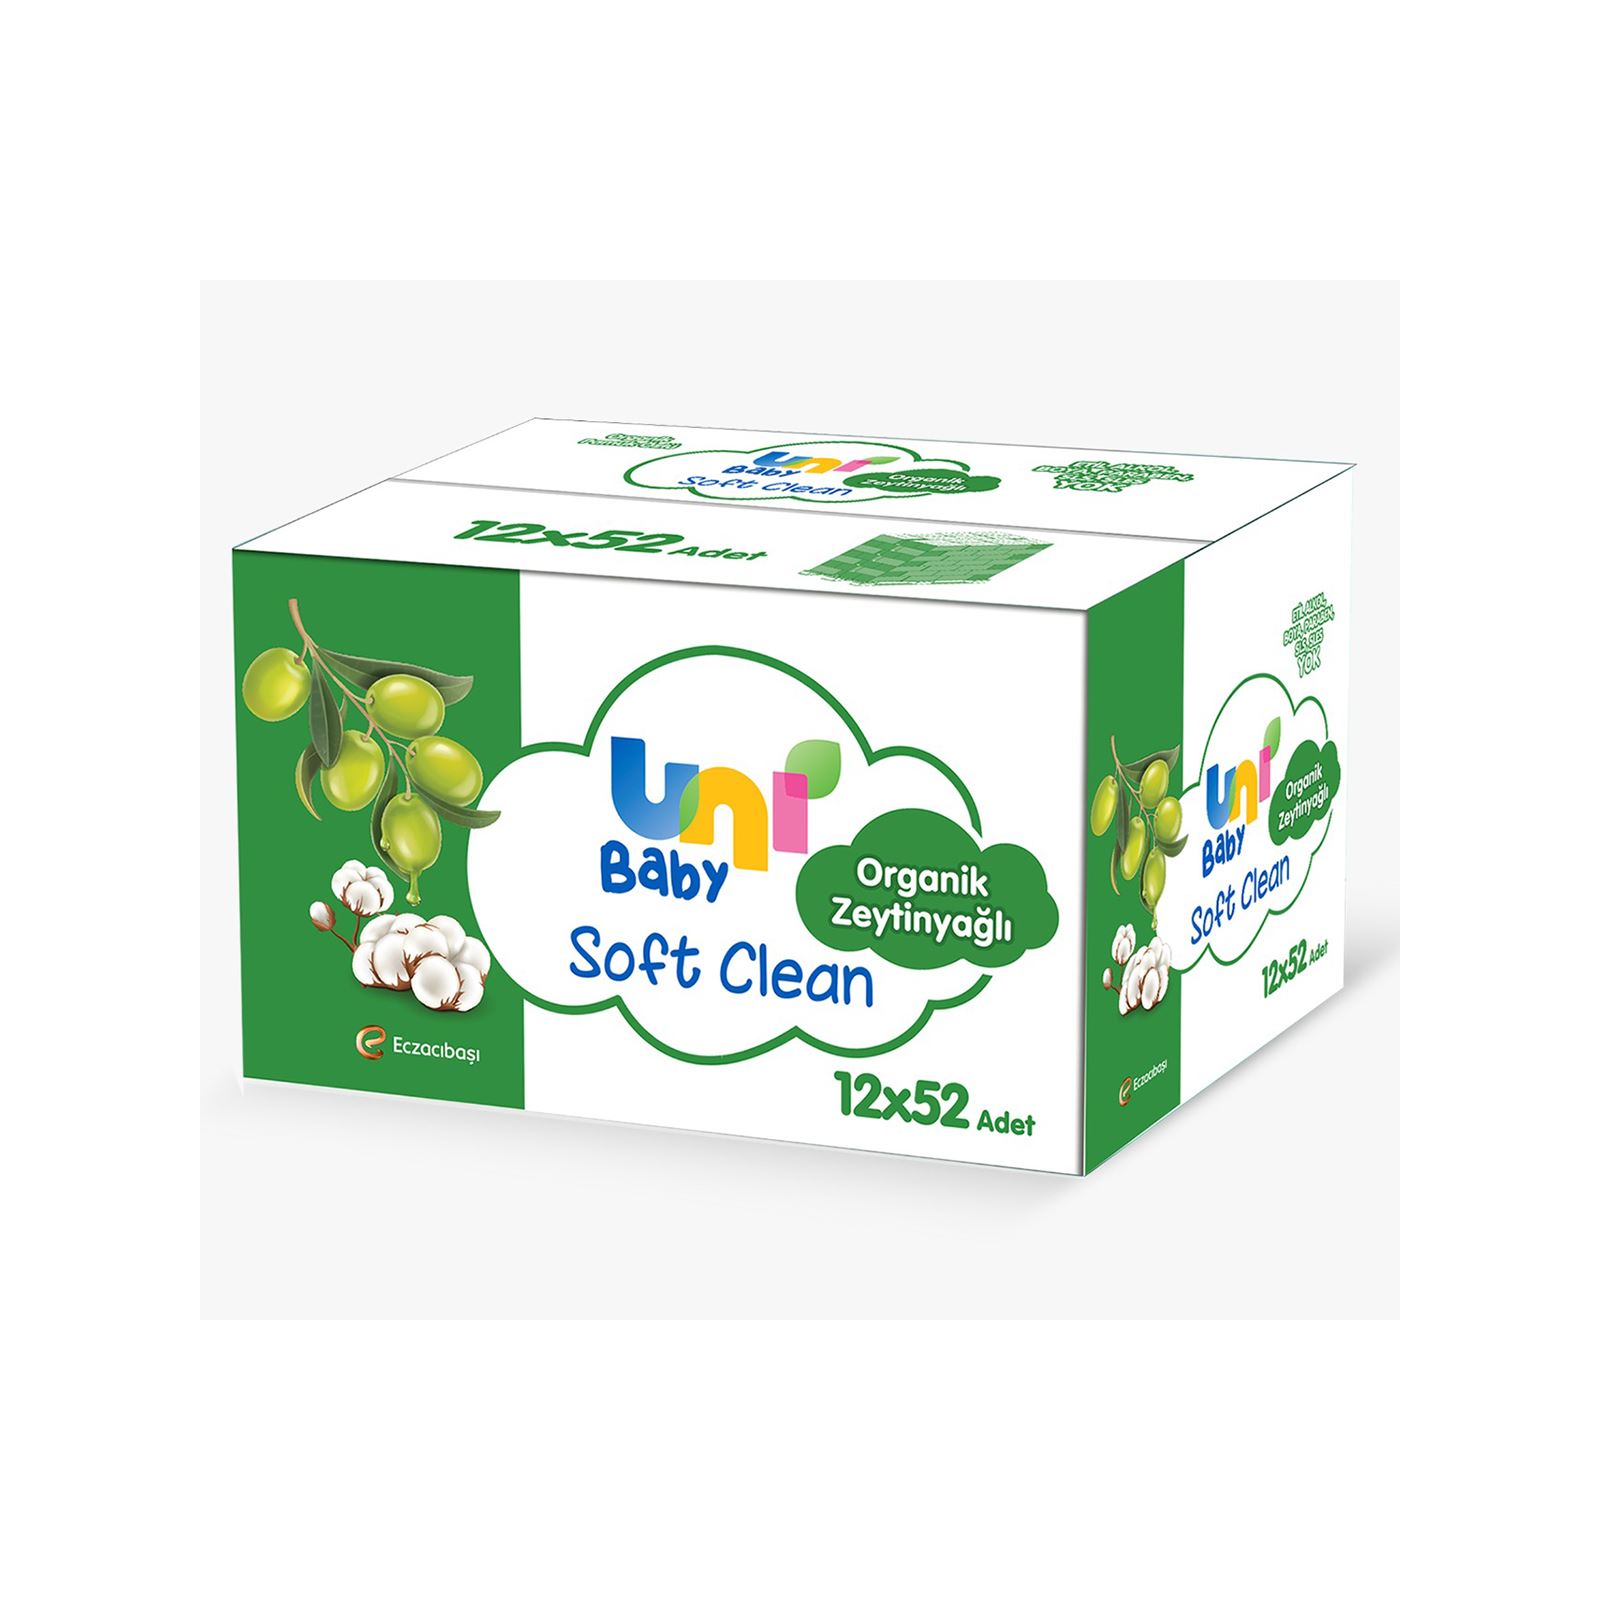 Uni Baby Soft Clean Organik Pamuk Özlü & Organik Zeytinyağlı 12x52 Adet